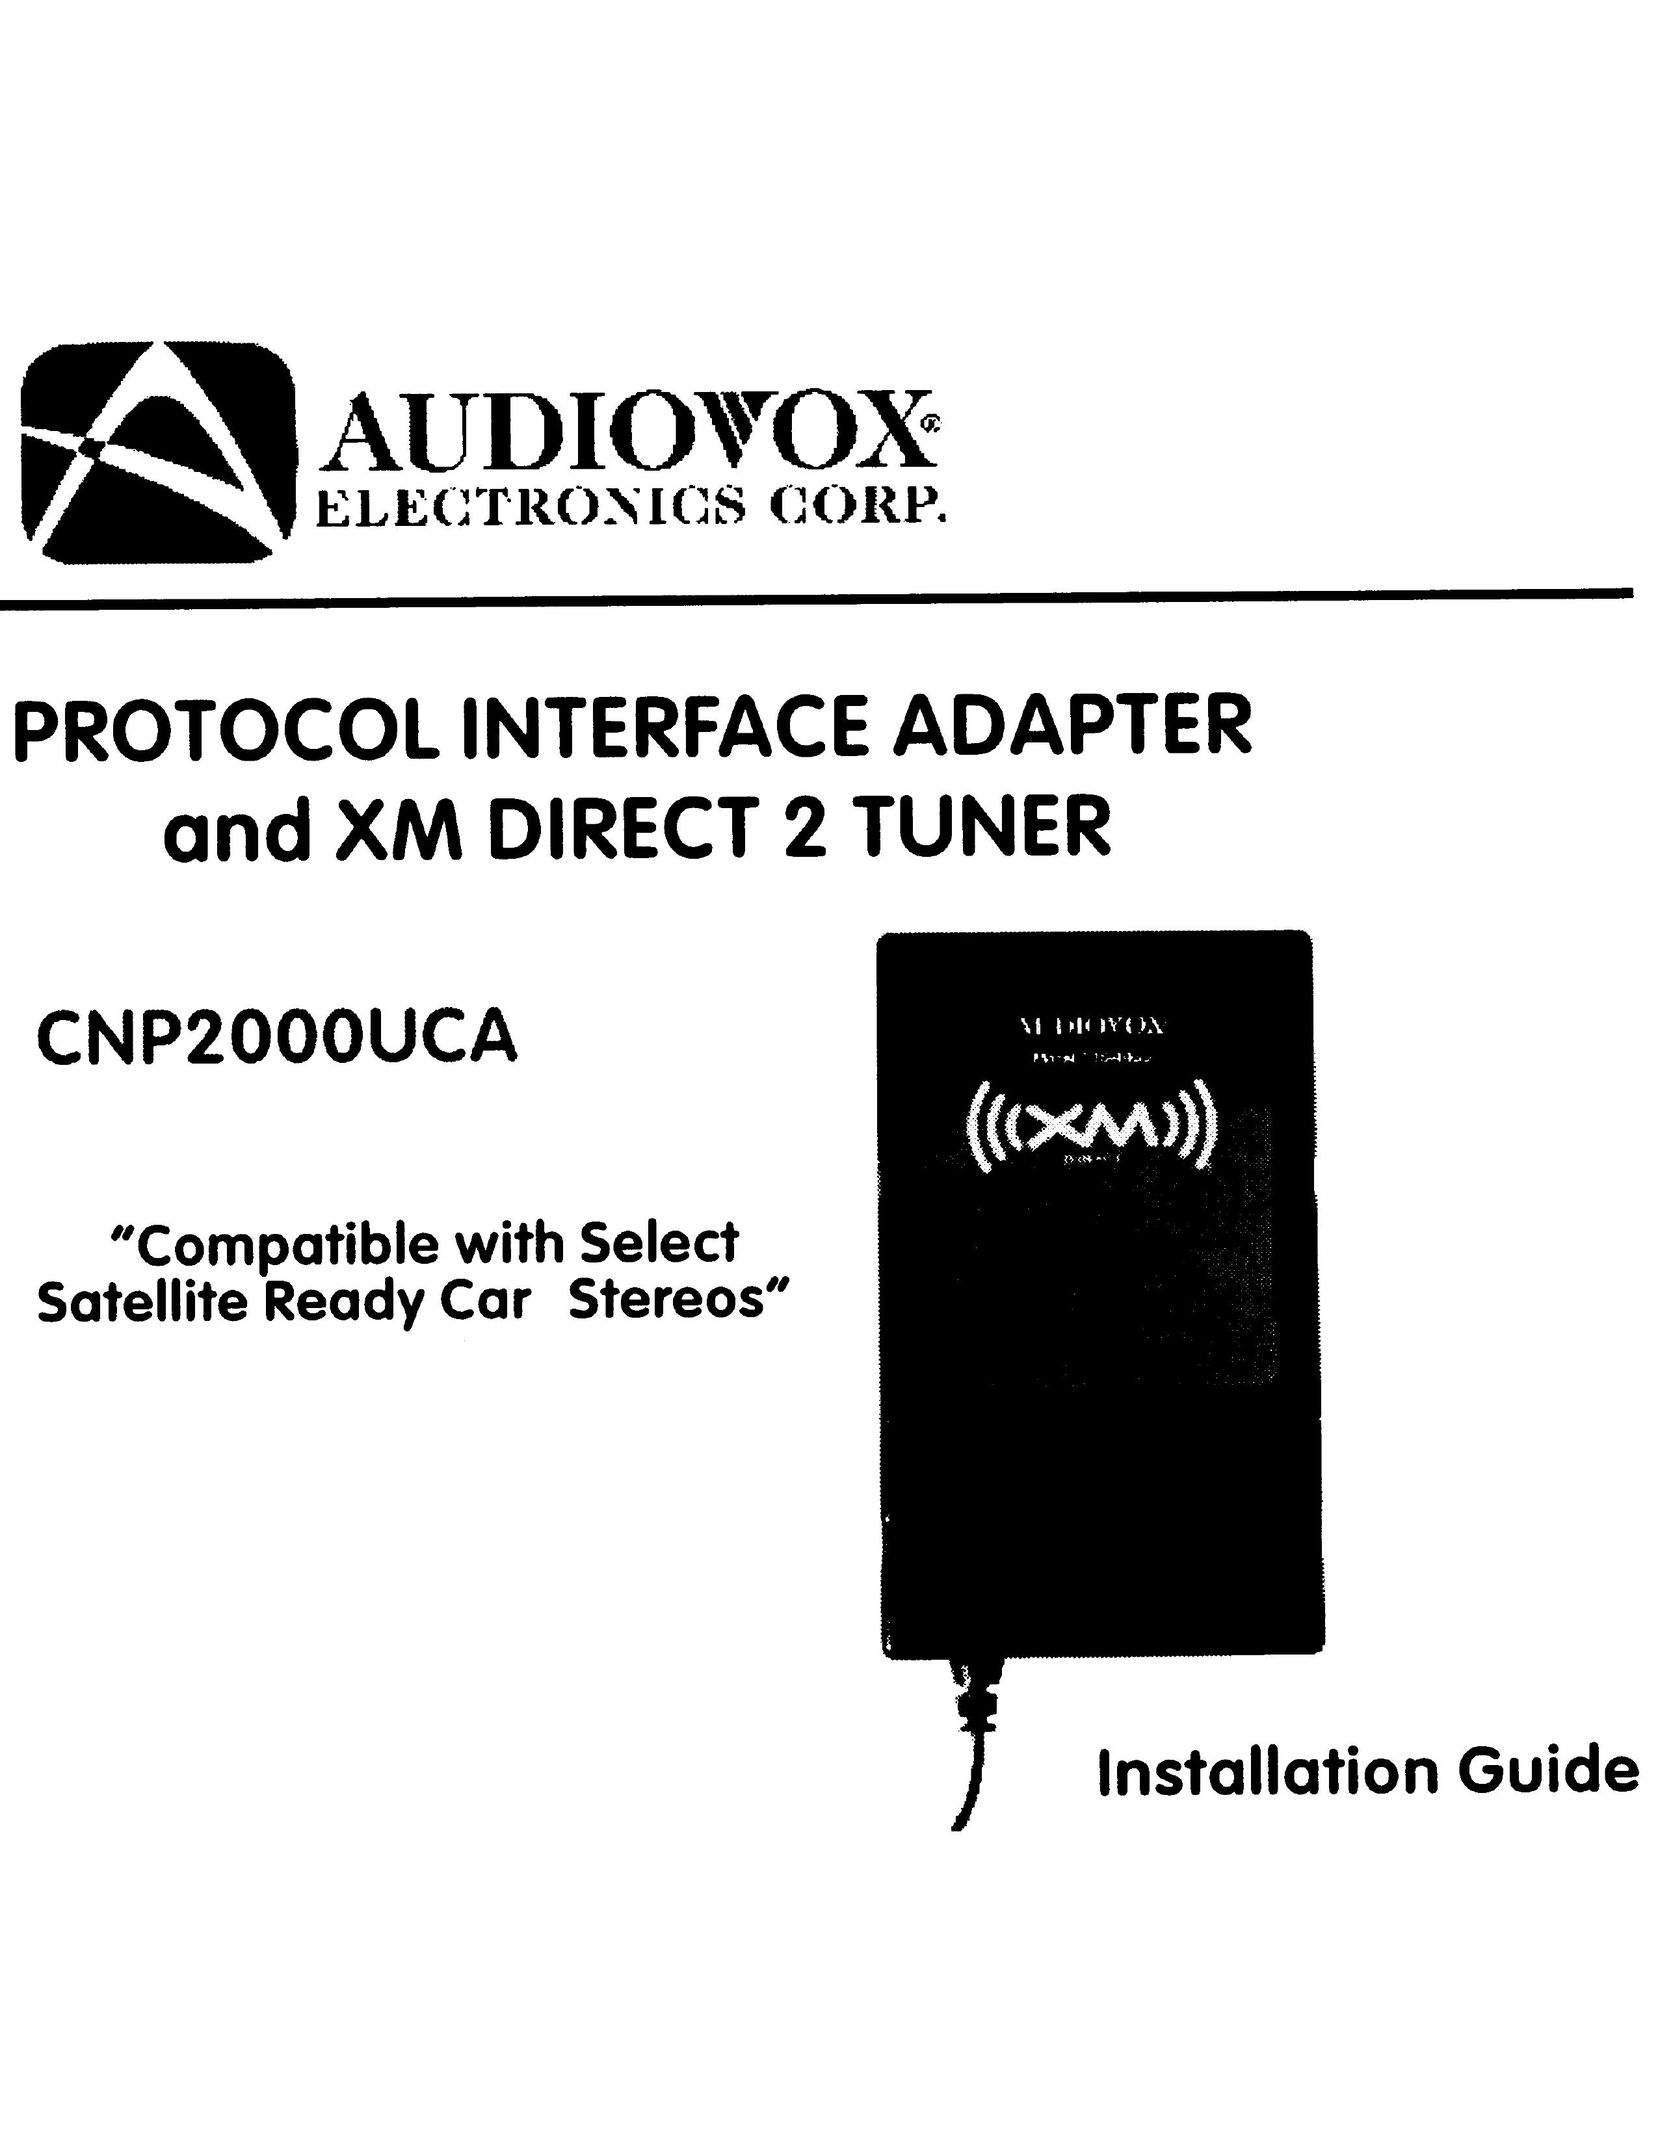 Audiovox CNP2000UCA Car Stereo System User Manual